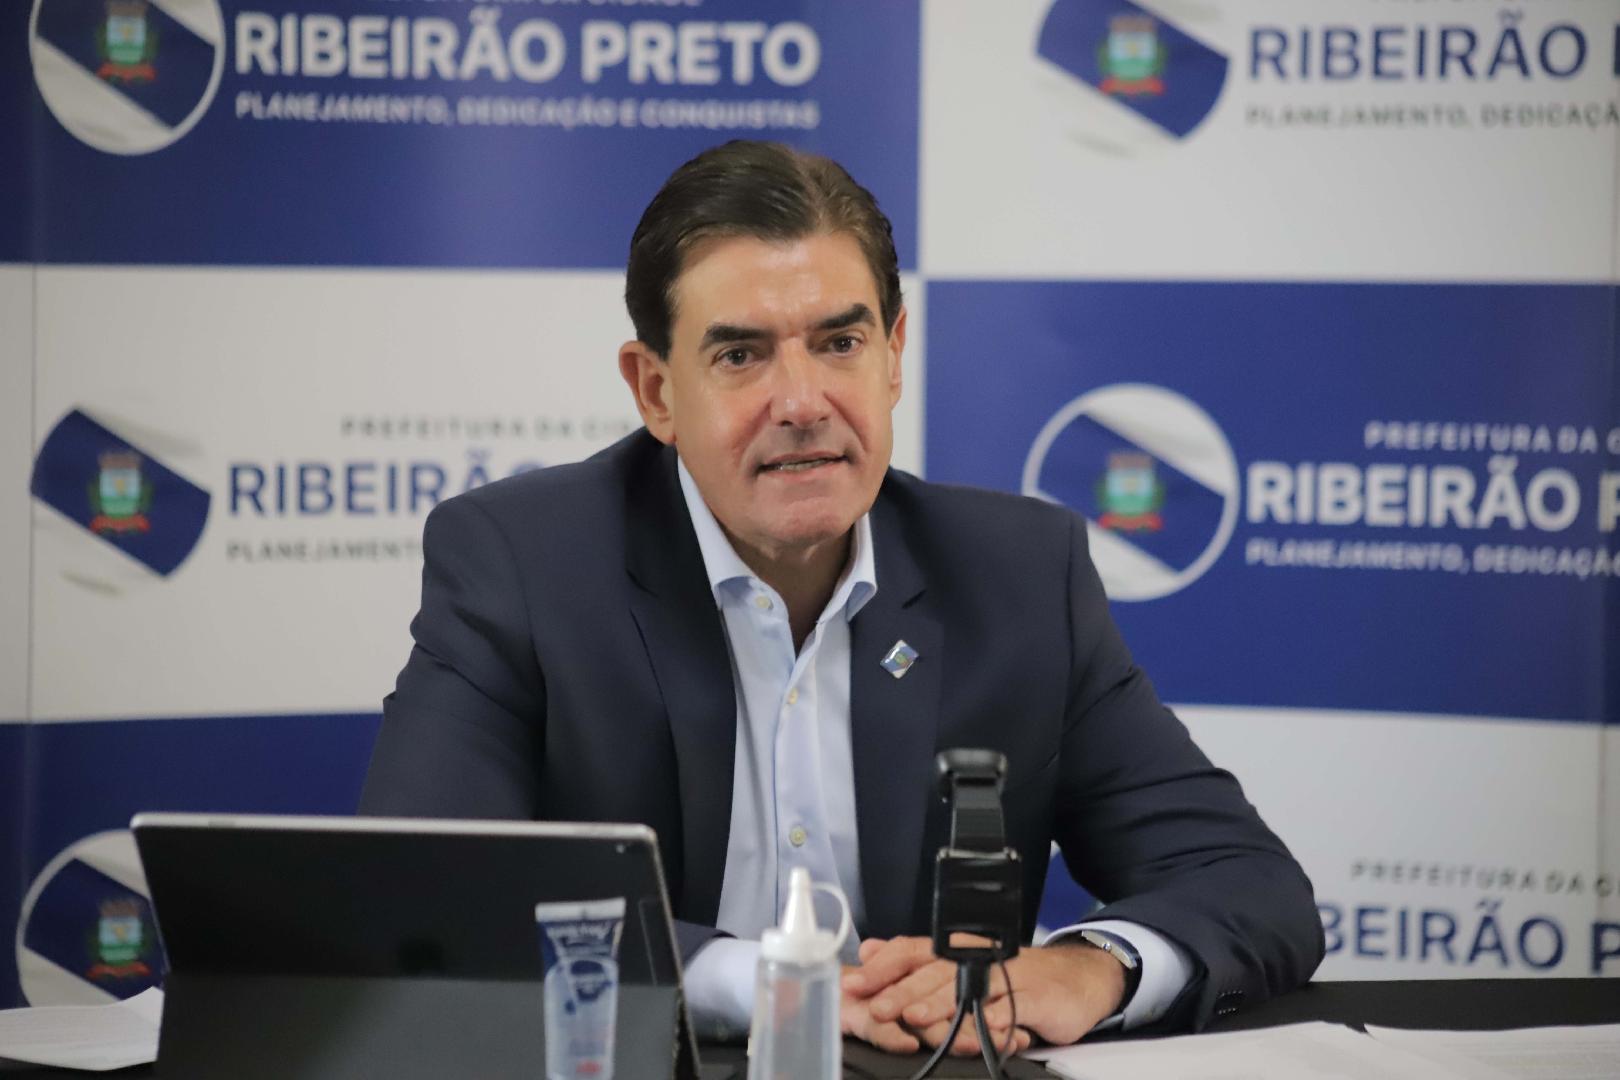 ‘Mentoria’ recebe o prefeito de Ribeirão Preto, Duarte Nogueira